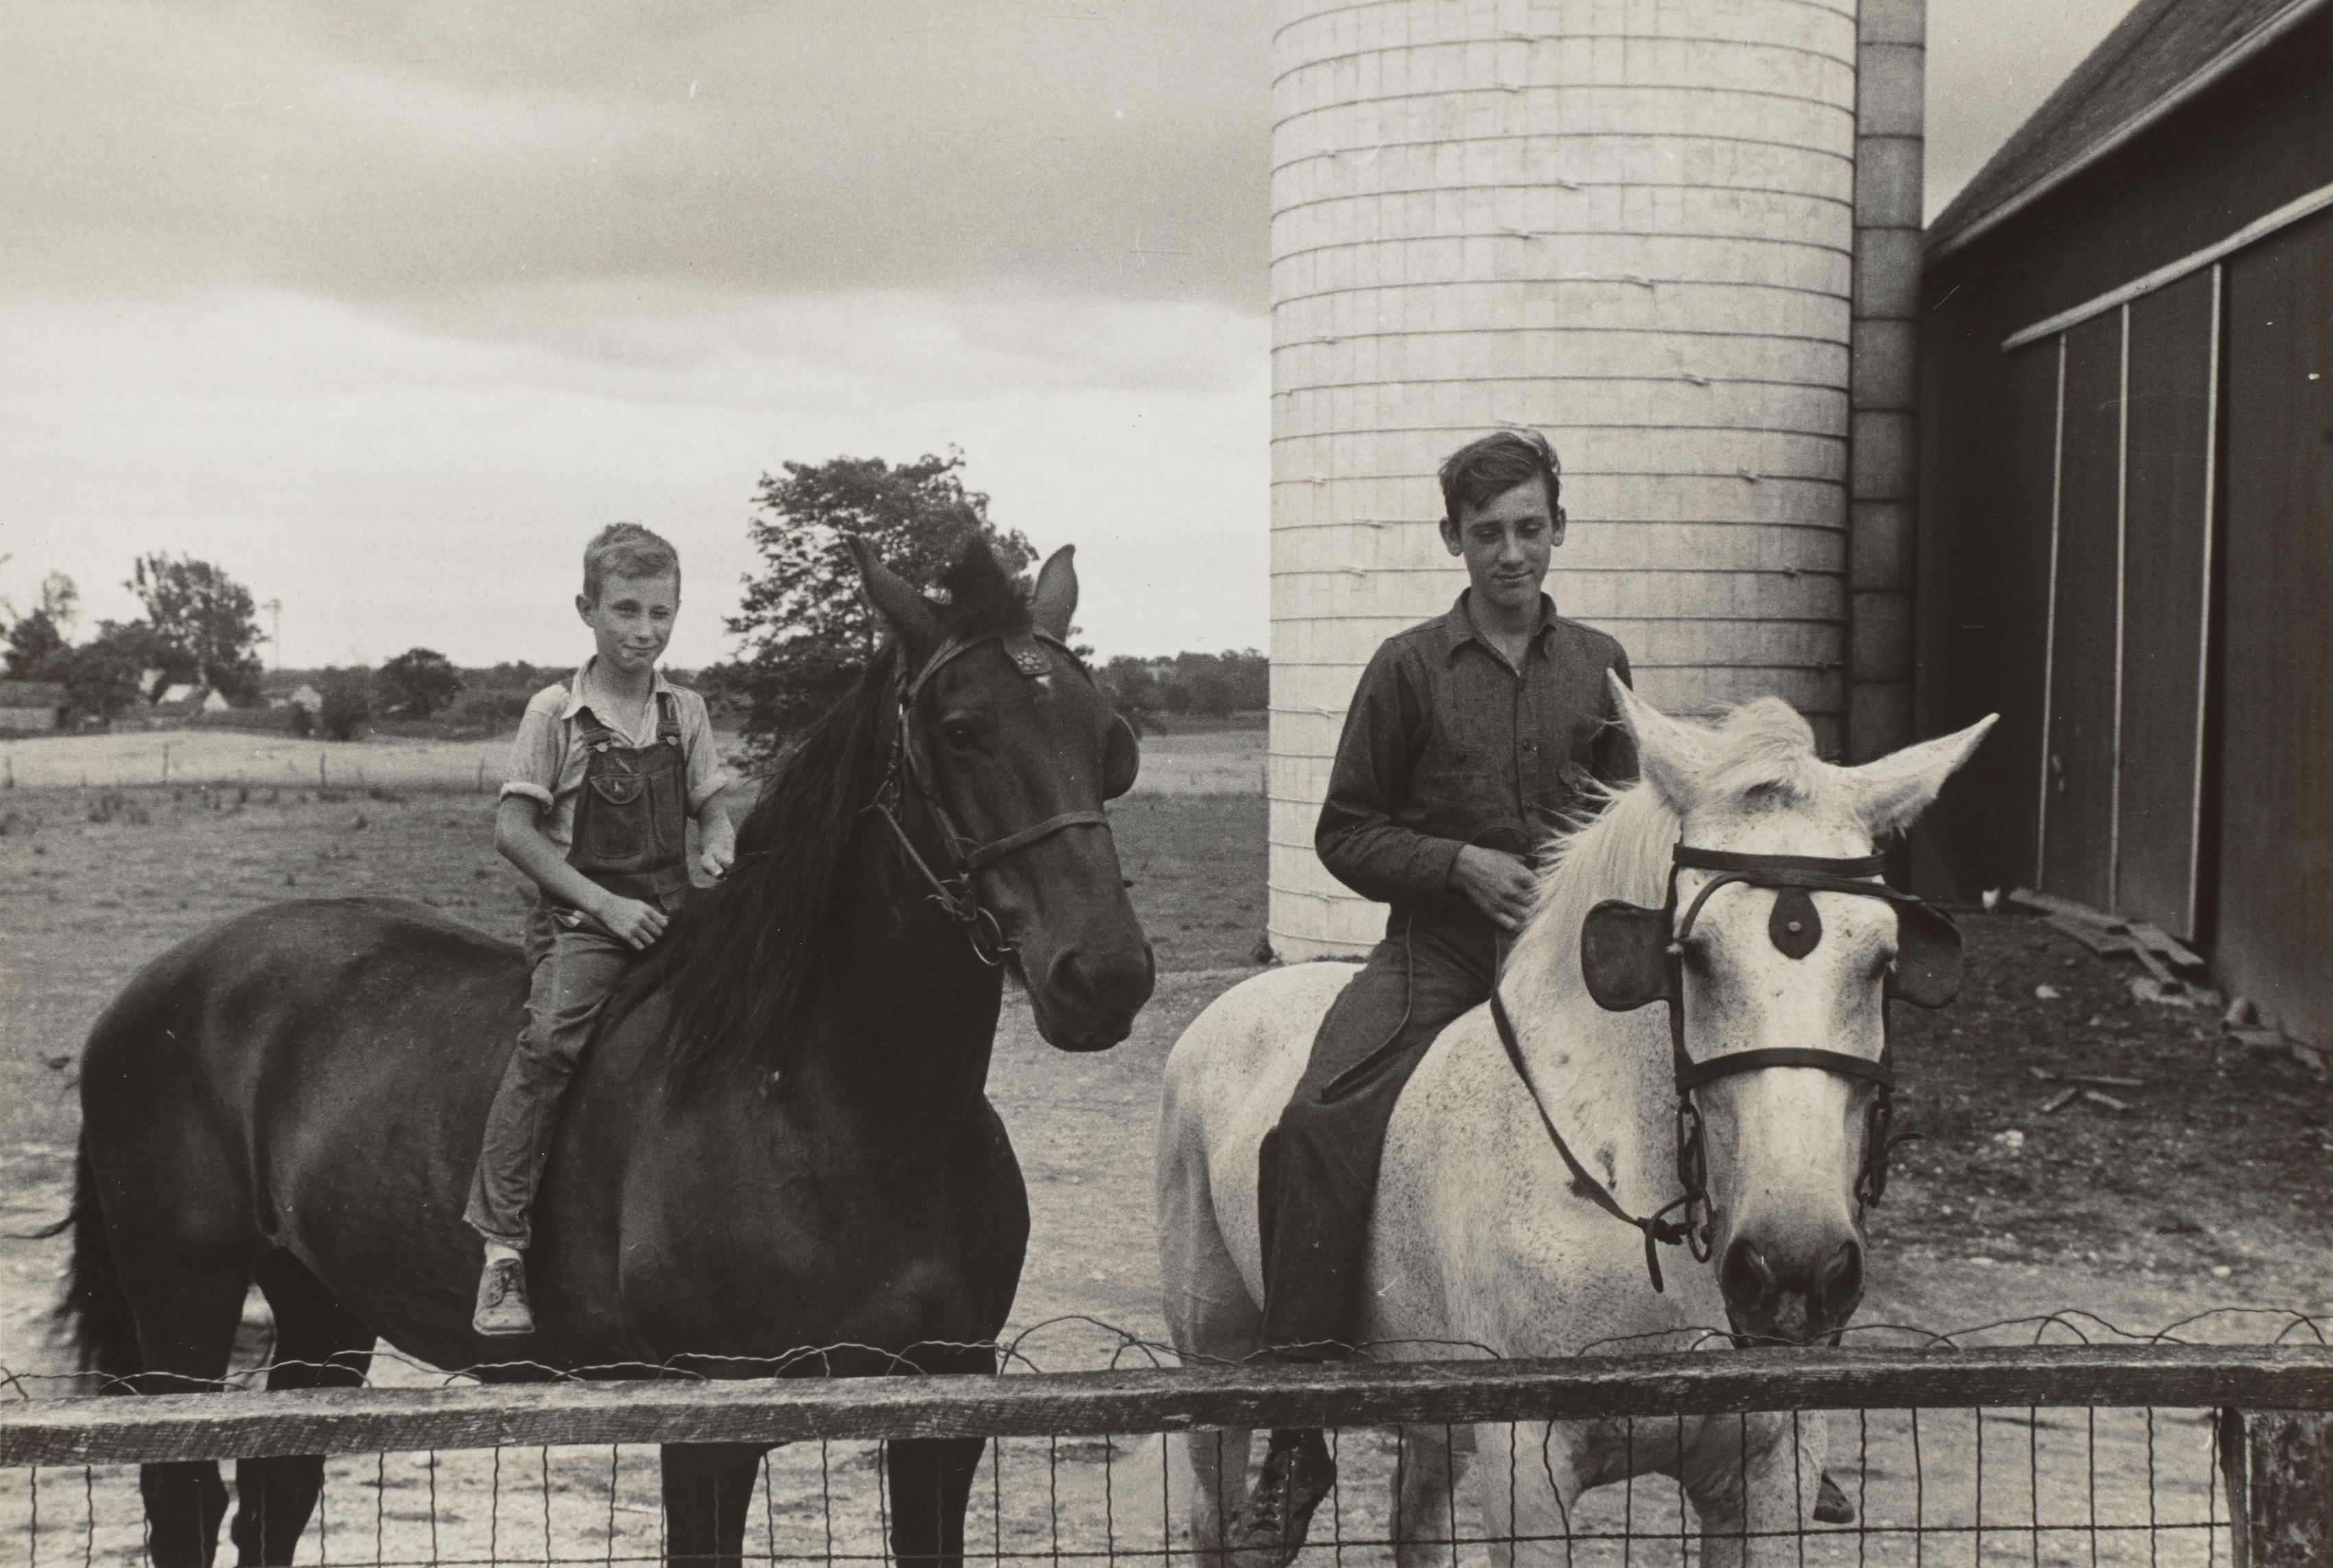 Sons of Mr. Thaxton, farmer, on horseback in farmyard, near Mechanicsburg, Ohio